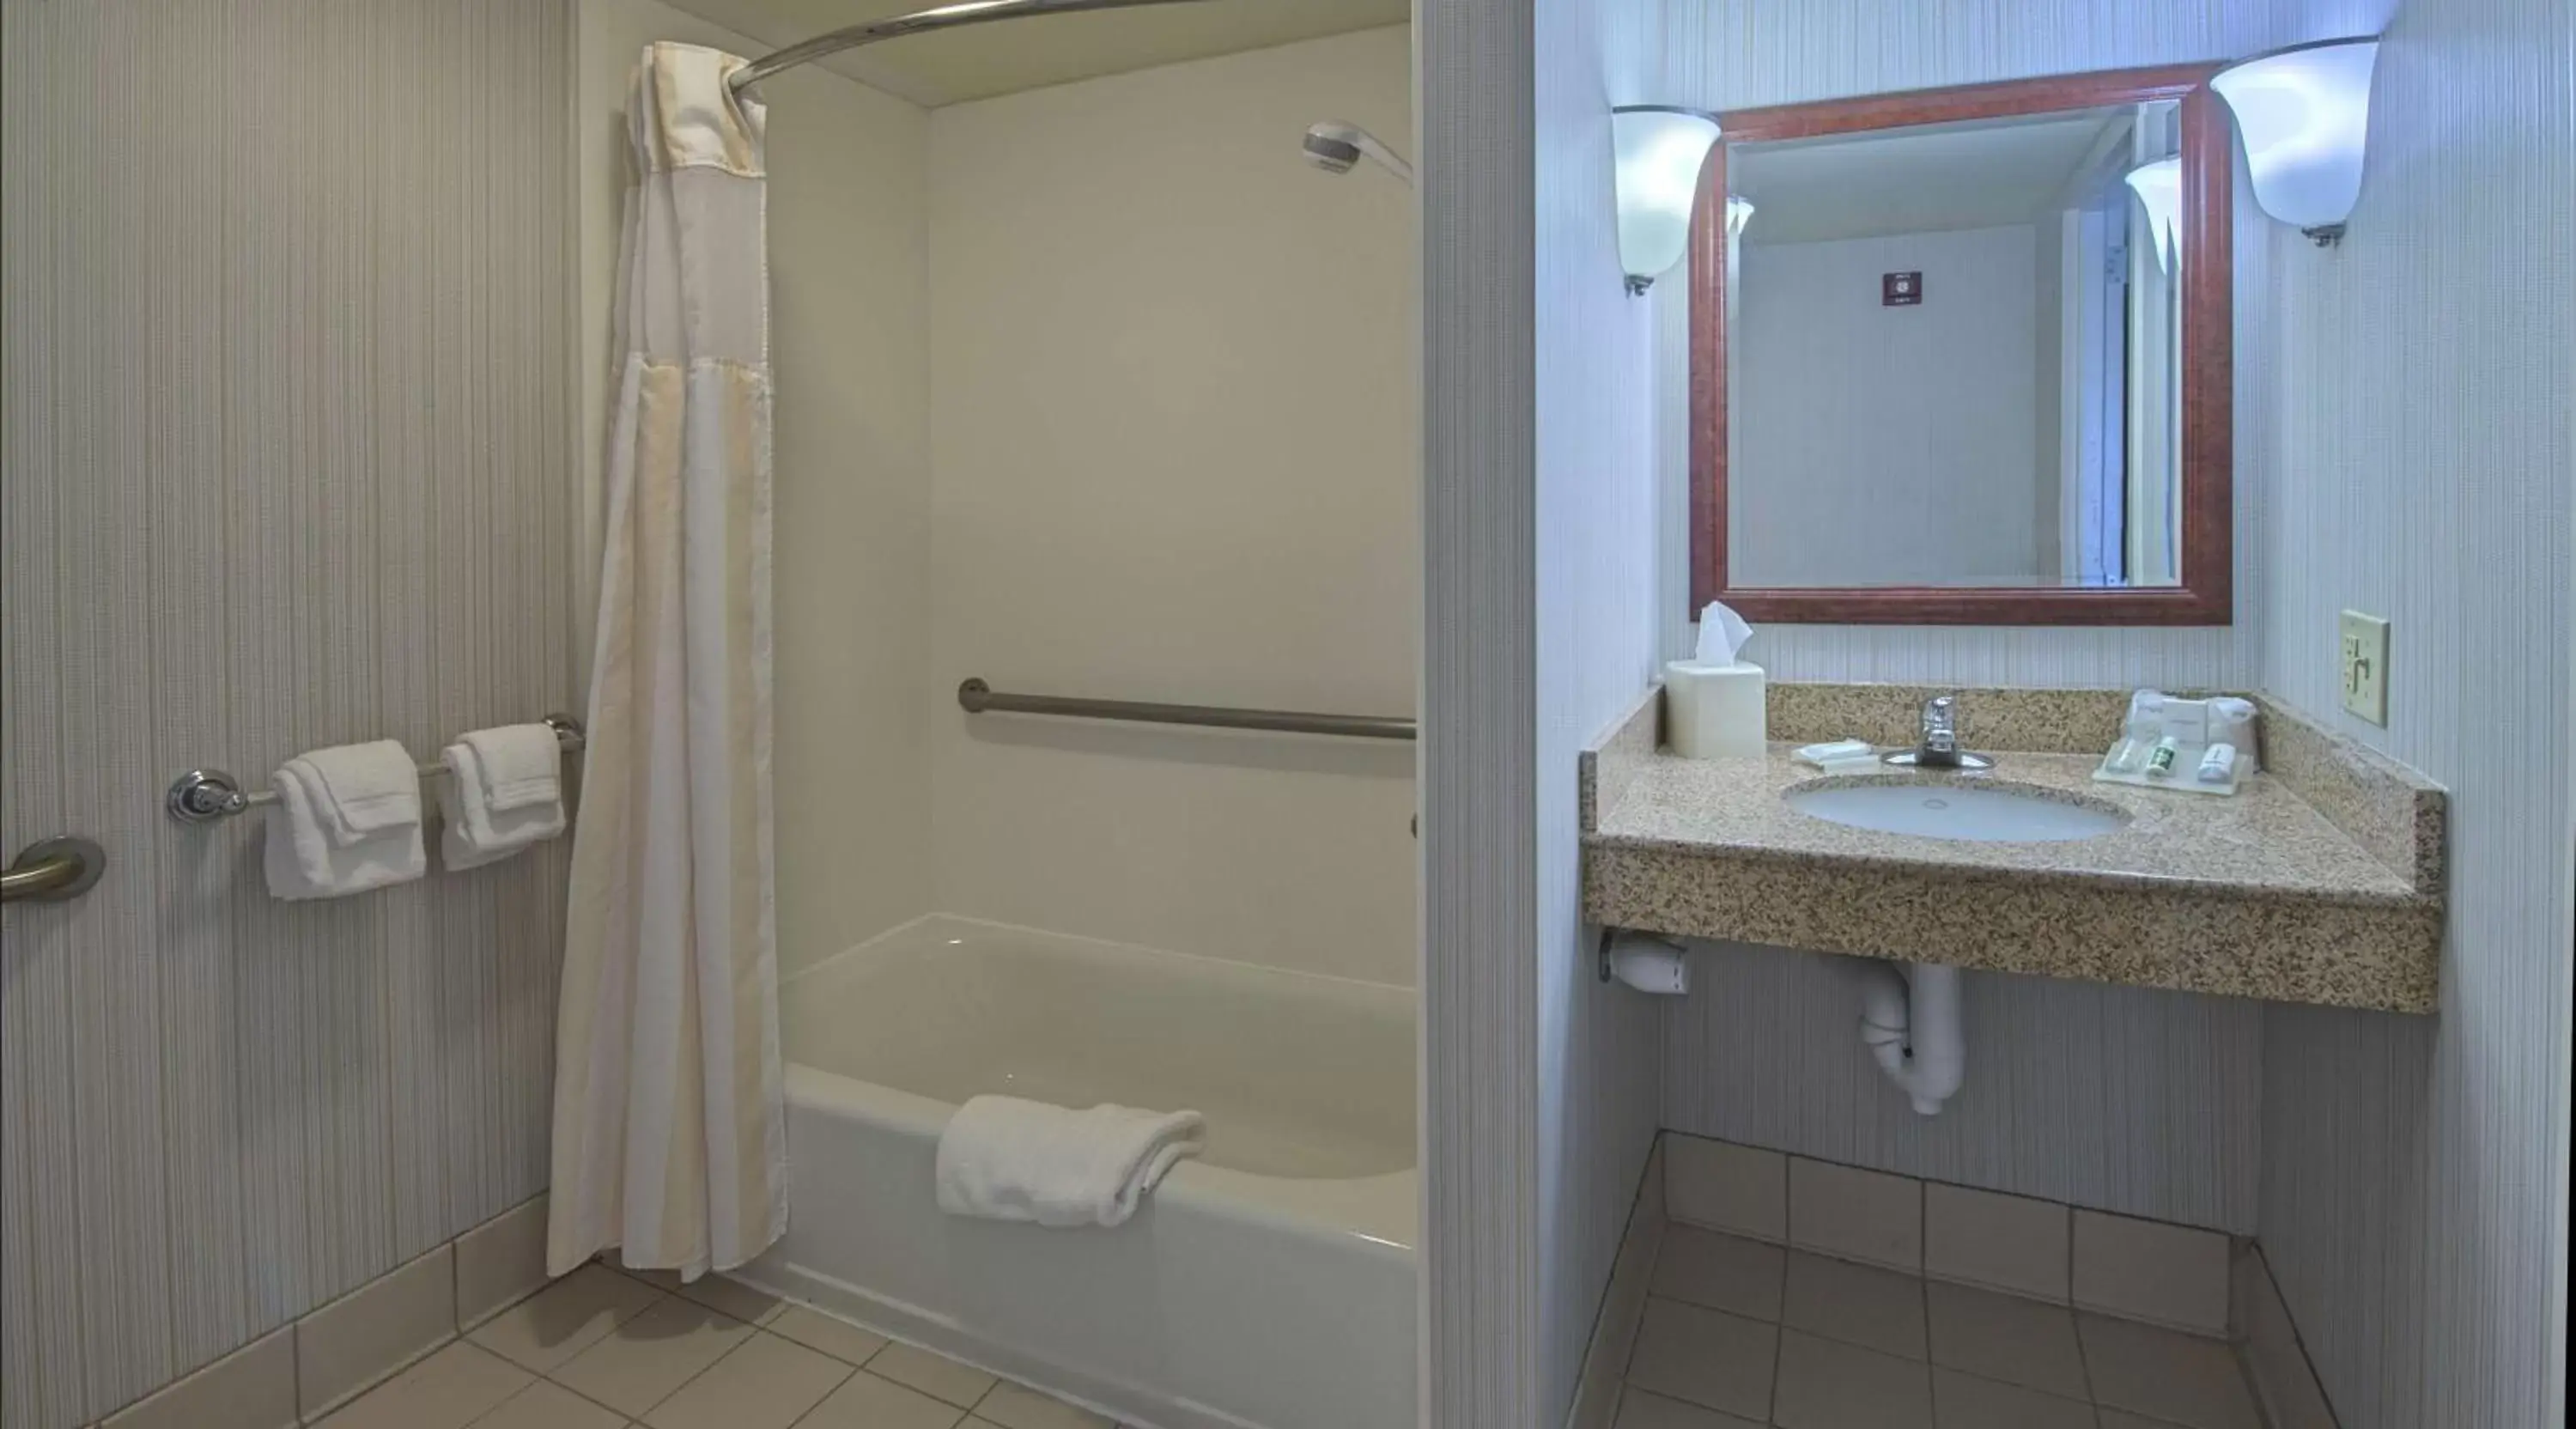 Bathroom in Hilton Garden Inn Auburn/Opelika